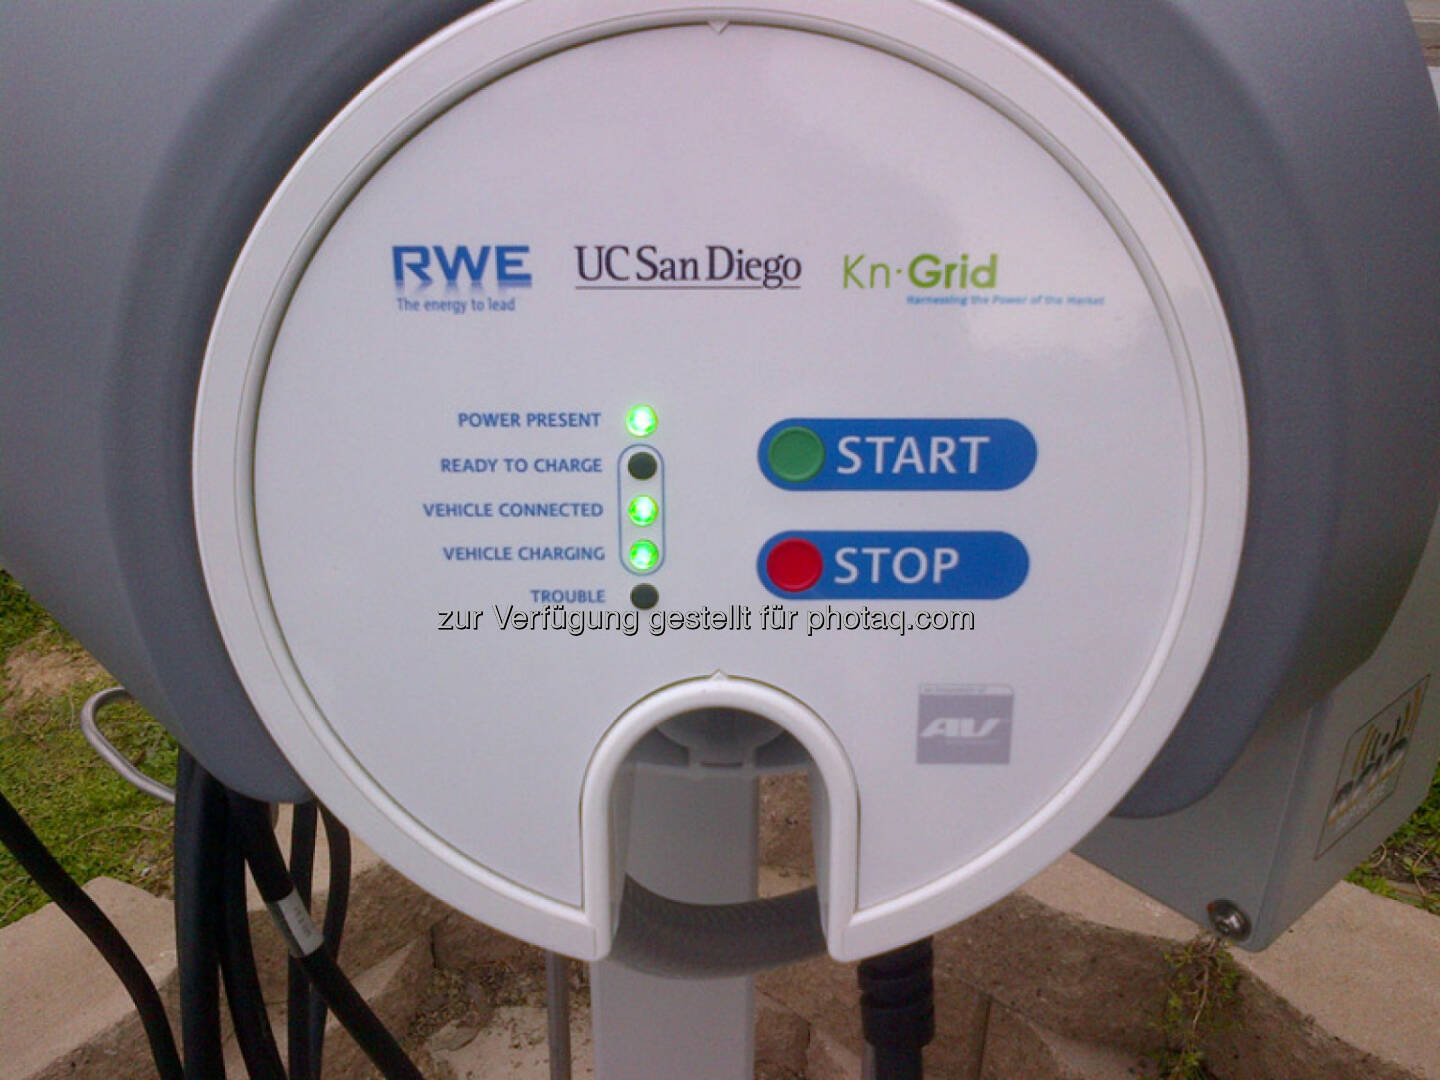 Einweihung des ersten RWE-Ladesystems in den USA - RWE Smart-Charging auf dem Universitäts-Campus in San Diego. Start Stop (Foto: RWE)